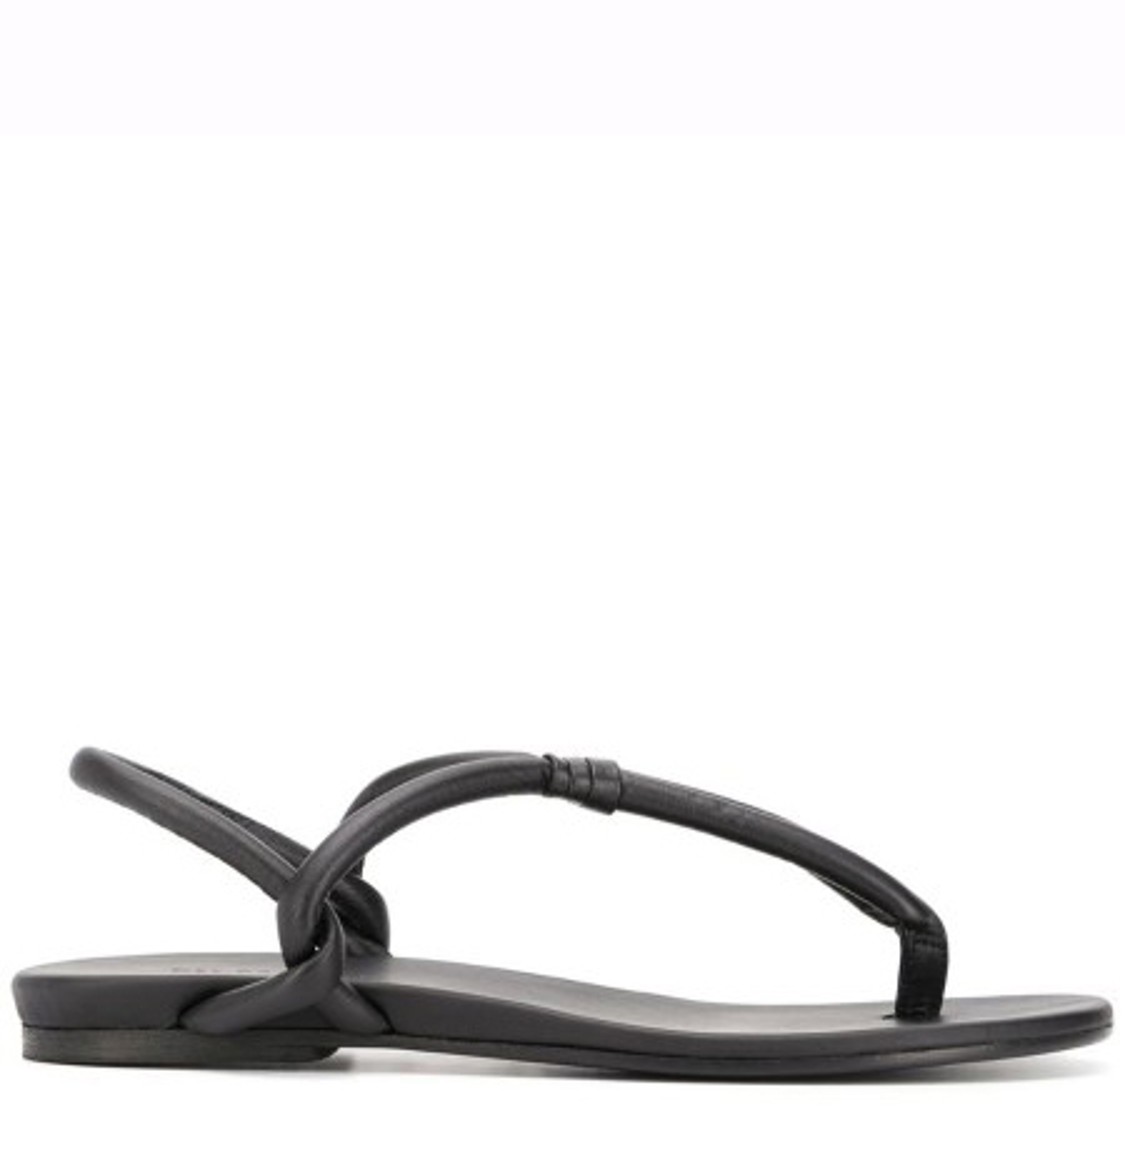 shop Del Carlo Saldi Scarpe: Scarpe Del Carlo, sandalo a infradito, in pelle nera.

Composizione: 100% pelle number 1681